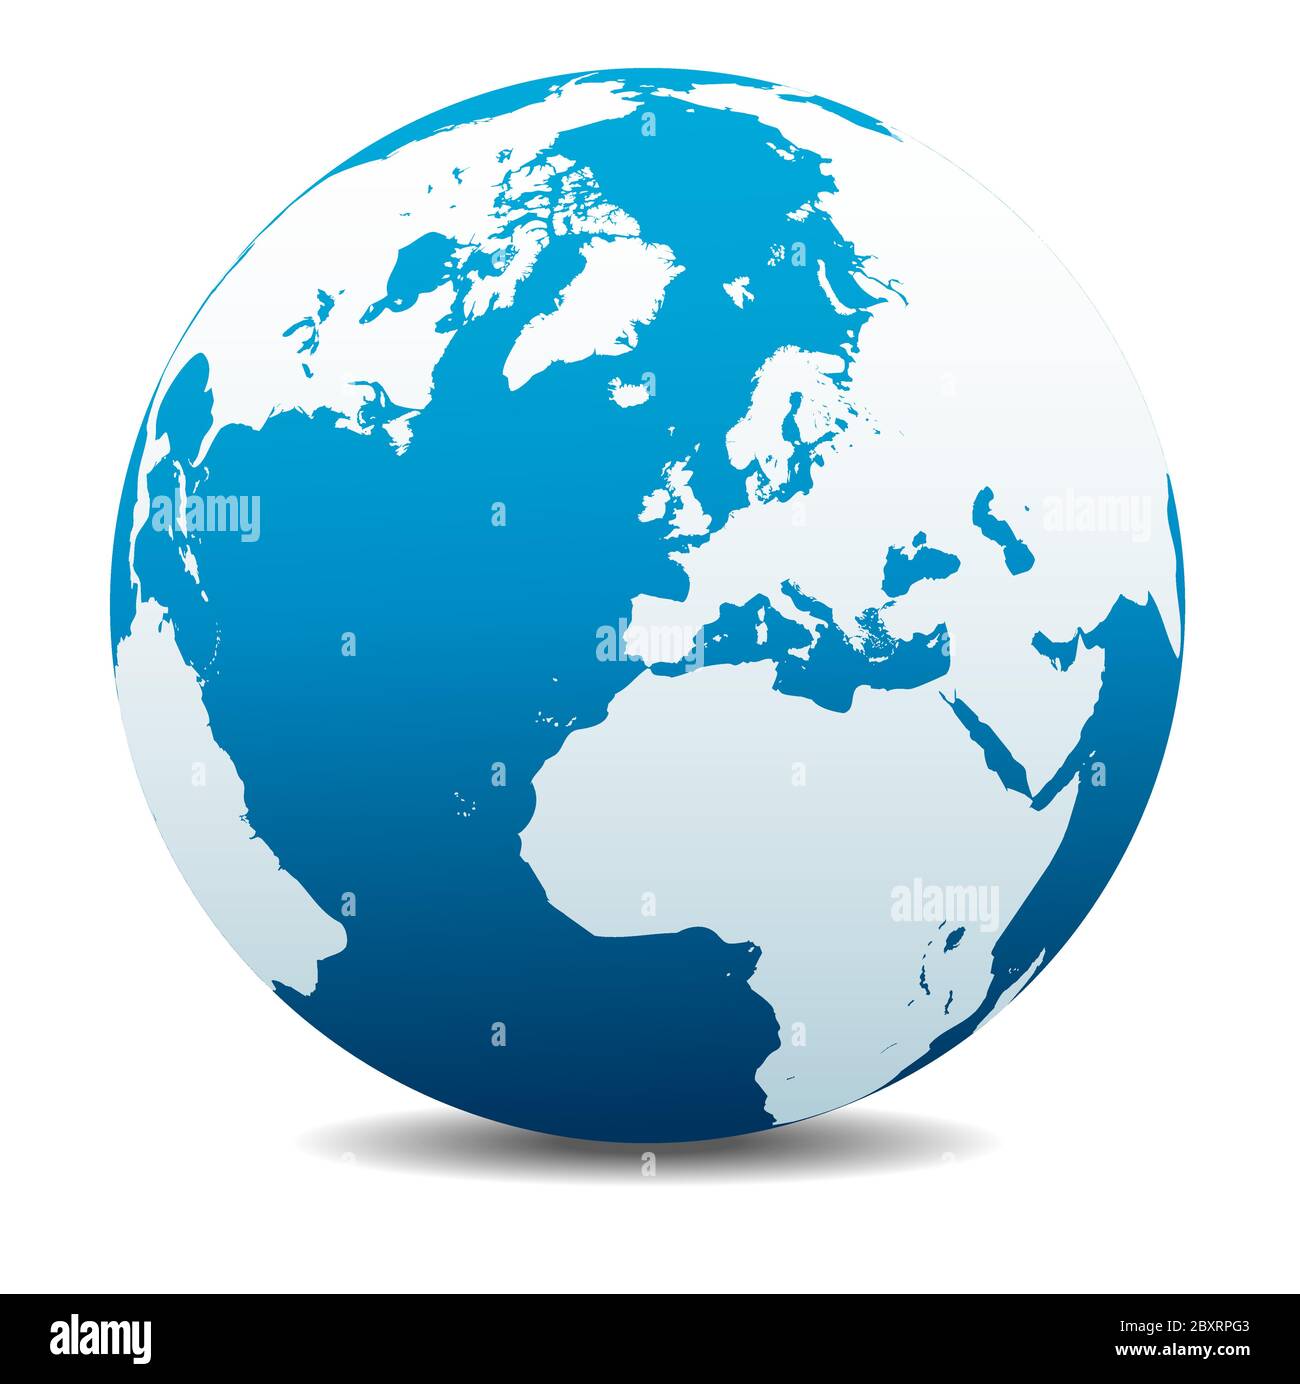 Europa, Russia e Africa, icona della mappa vettoriale del globo mondiale, Terra. Tutti gli elementi si trovano su singoli livelli nel file vettoriale. Illustrazione Vettoriale